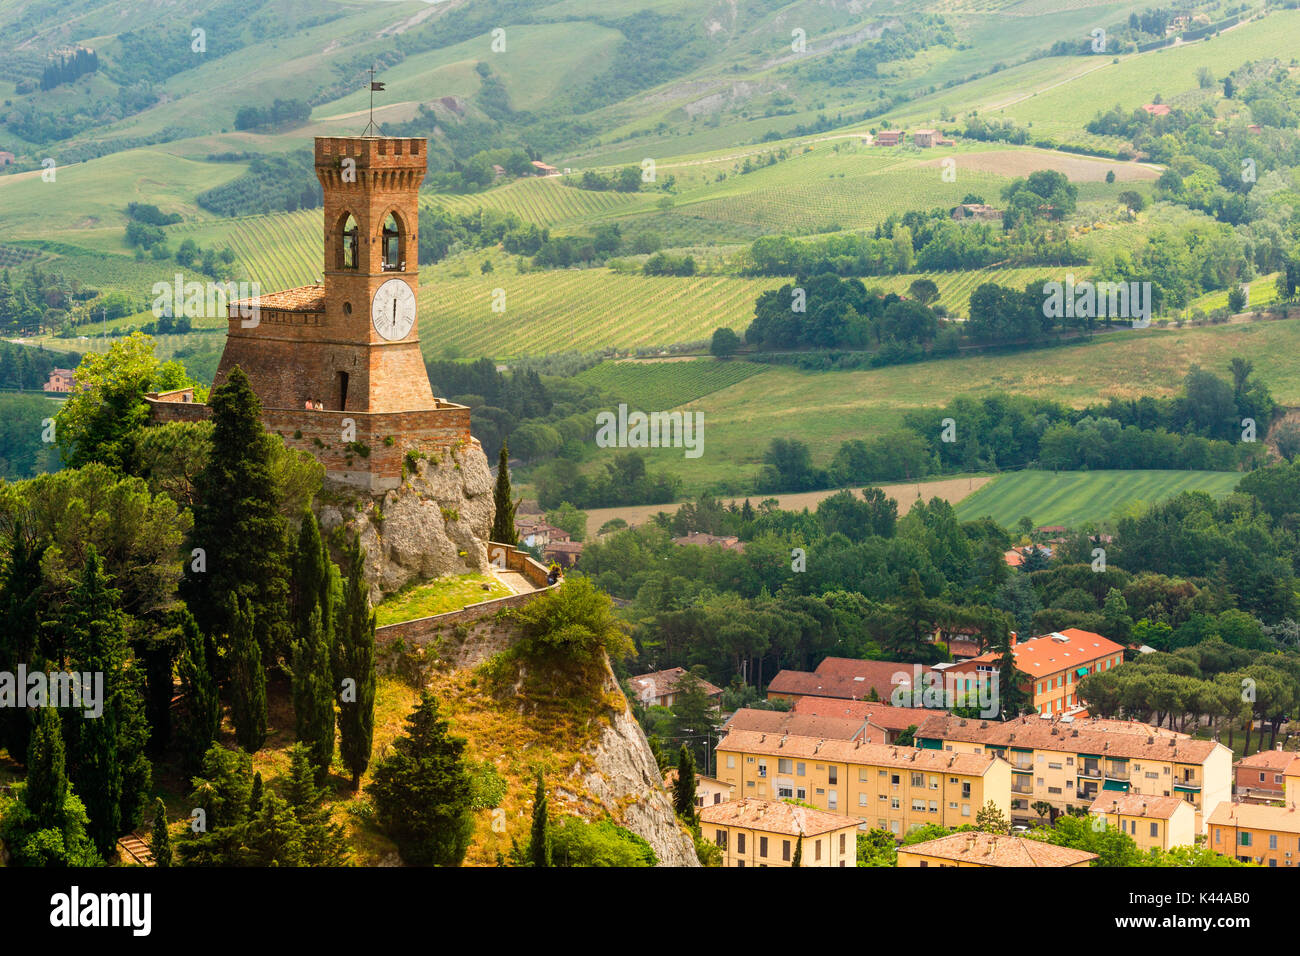 Castello, Brisighella, Provincia di Ravenna, Emilia Romagna, Italia. Orologio medievale torre nel villaggio. Foto Stock